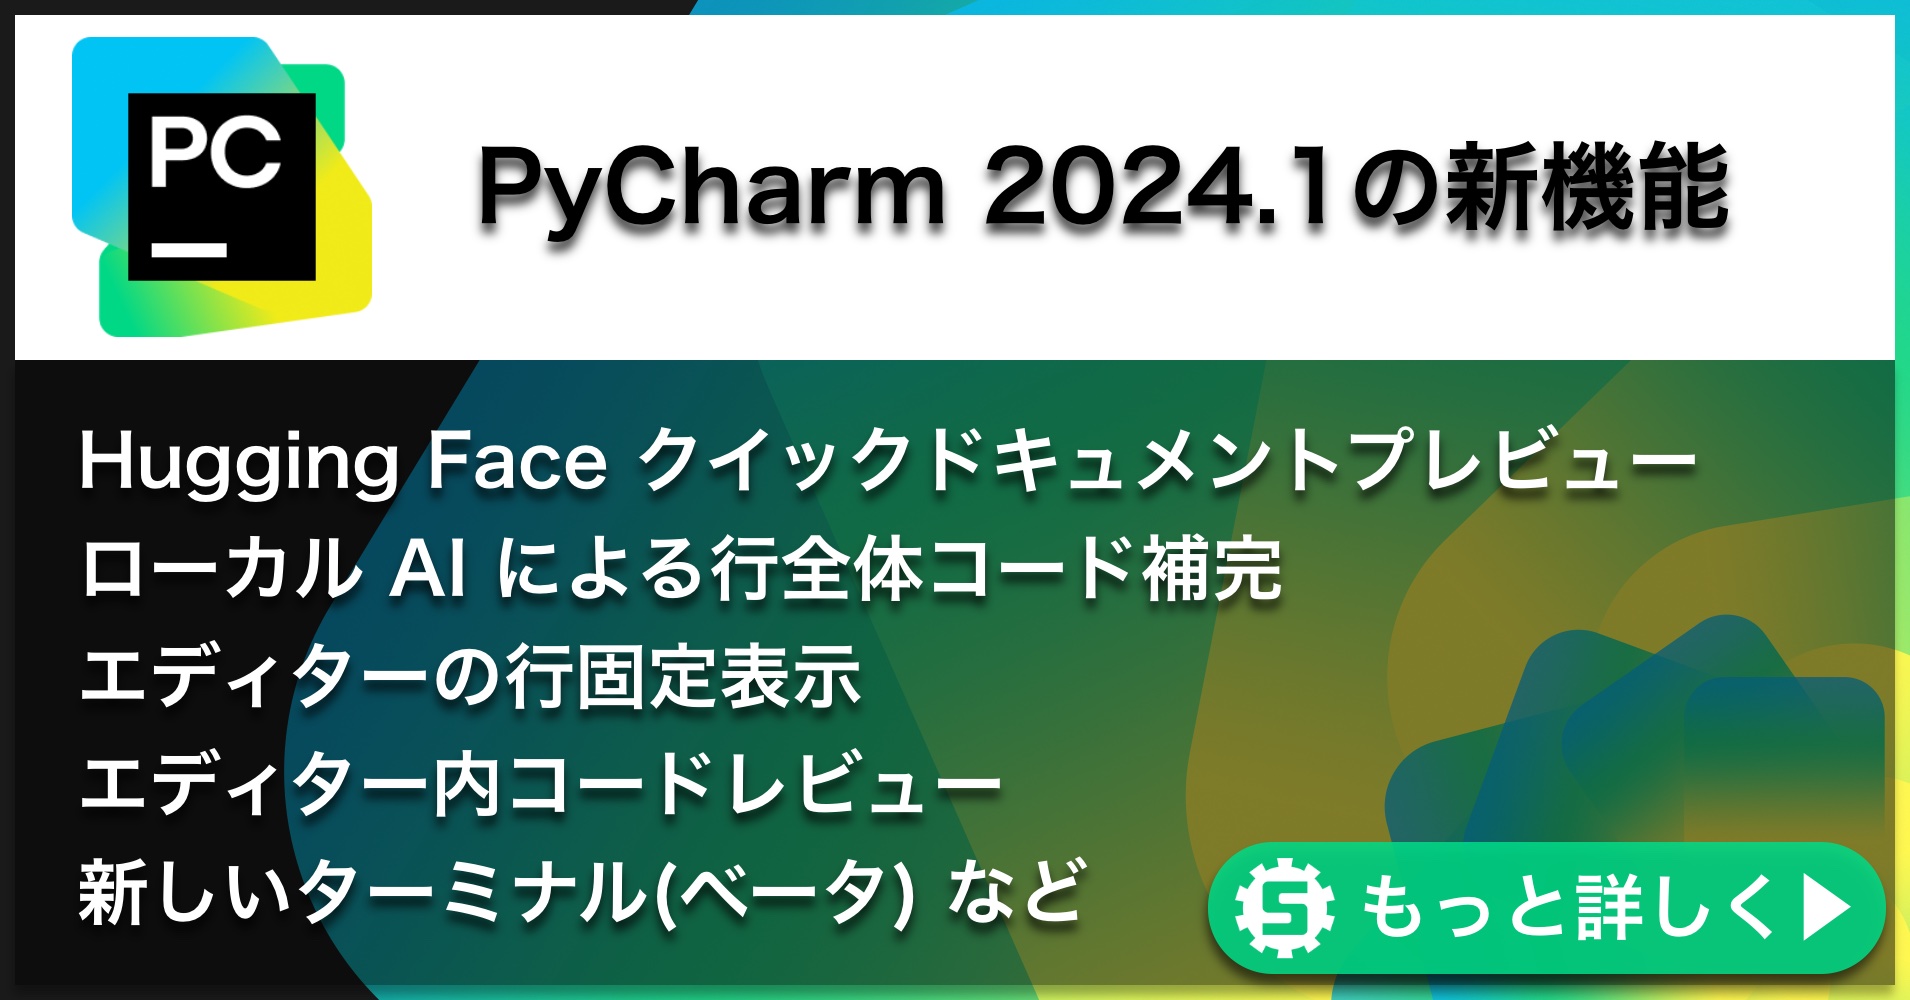 PyCharm 2024.1の新機能